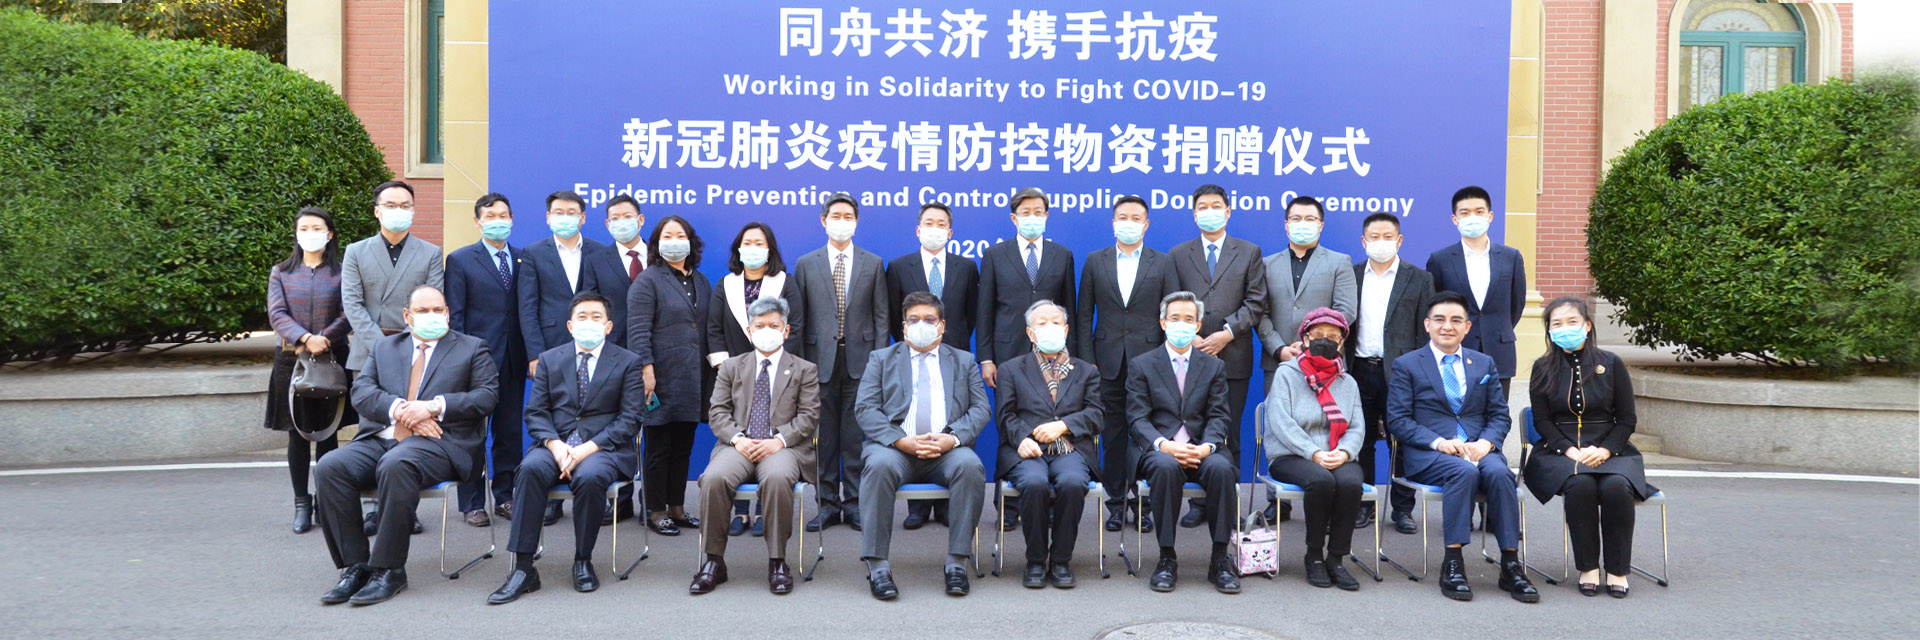 中国知名企业向泰国、孟加拉国、马来西亚、 摩洛哥四国捐赠防疫物资